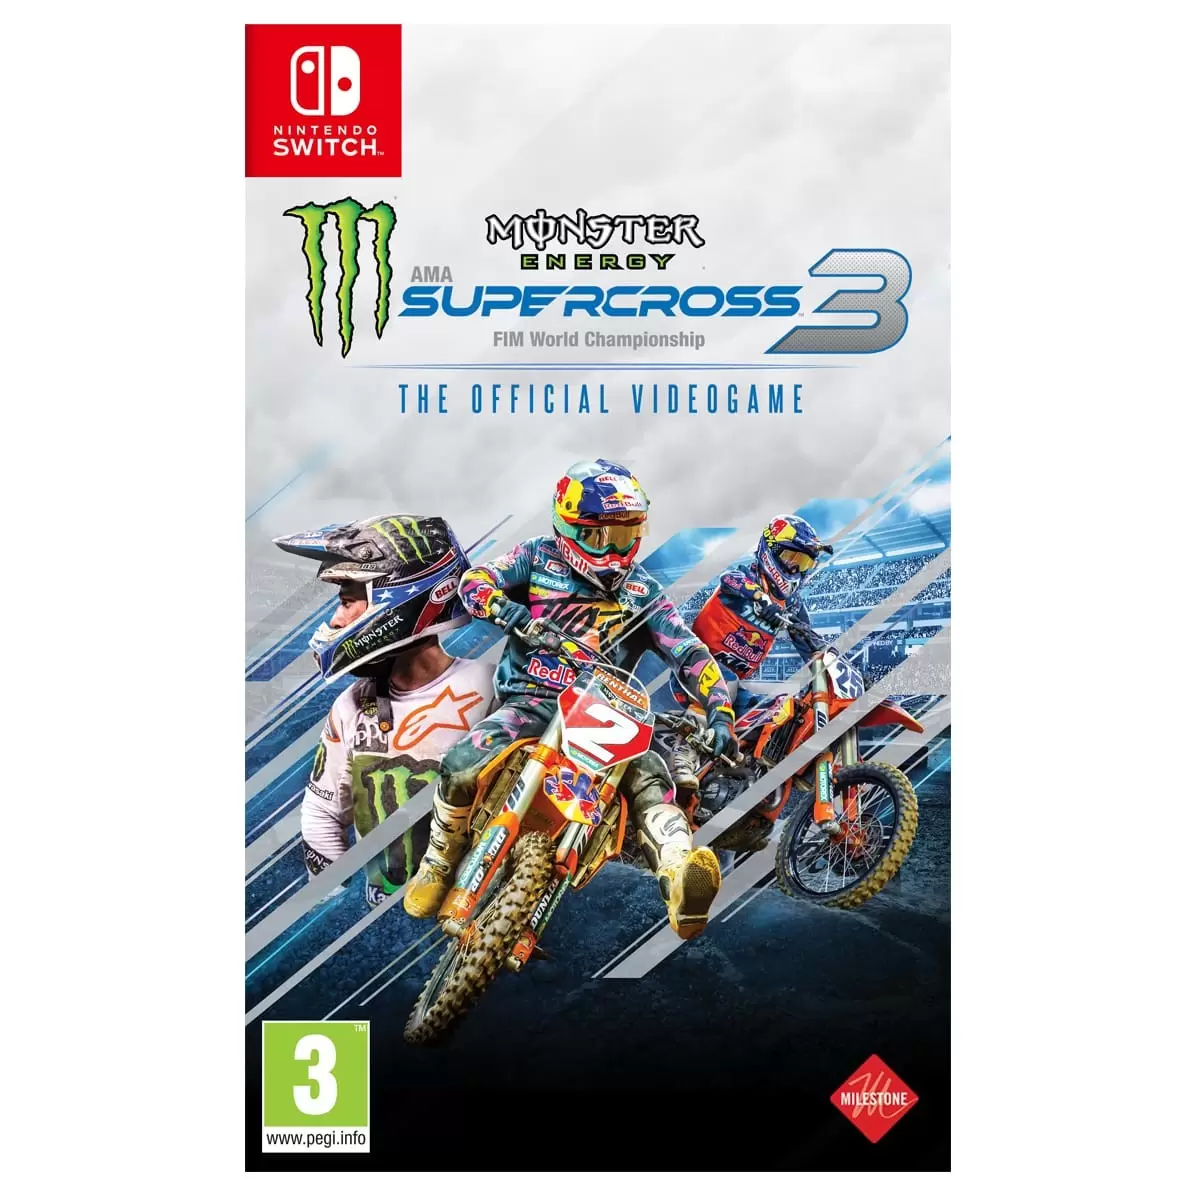 Nintendo Switch Games - Monster Energy Supercross 3